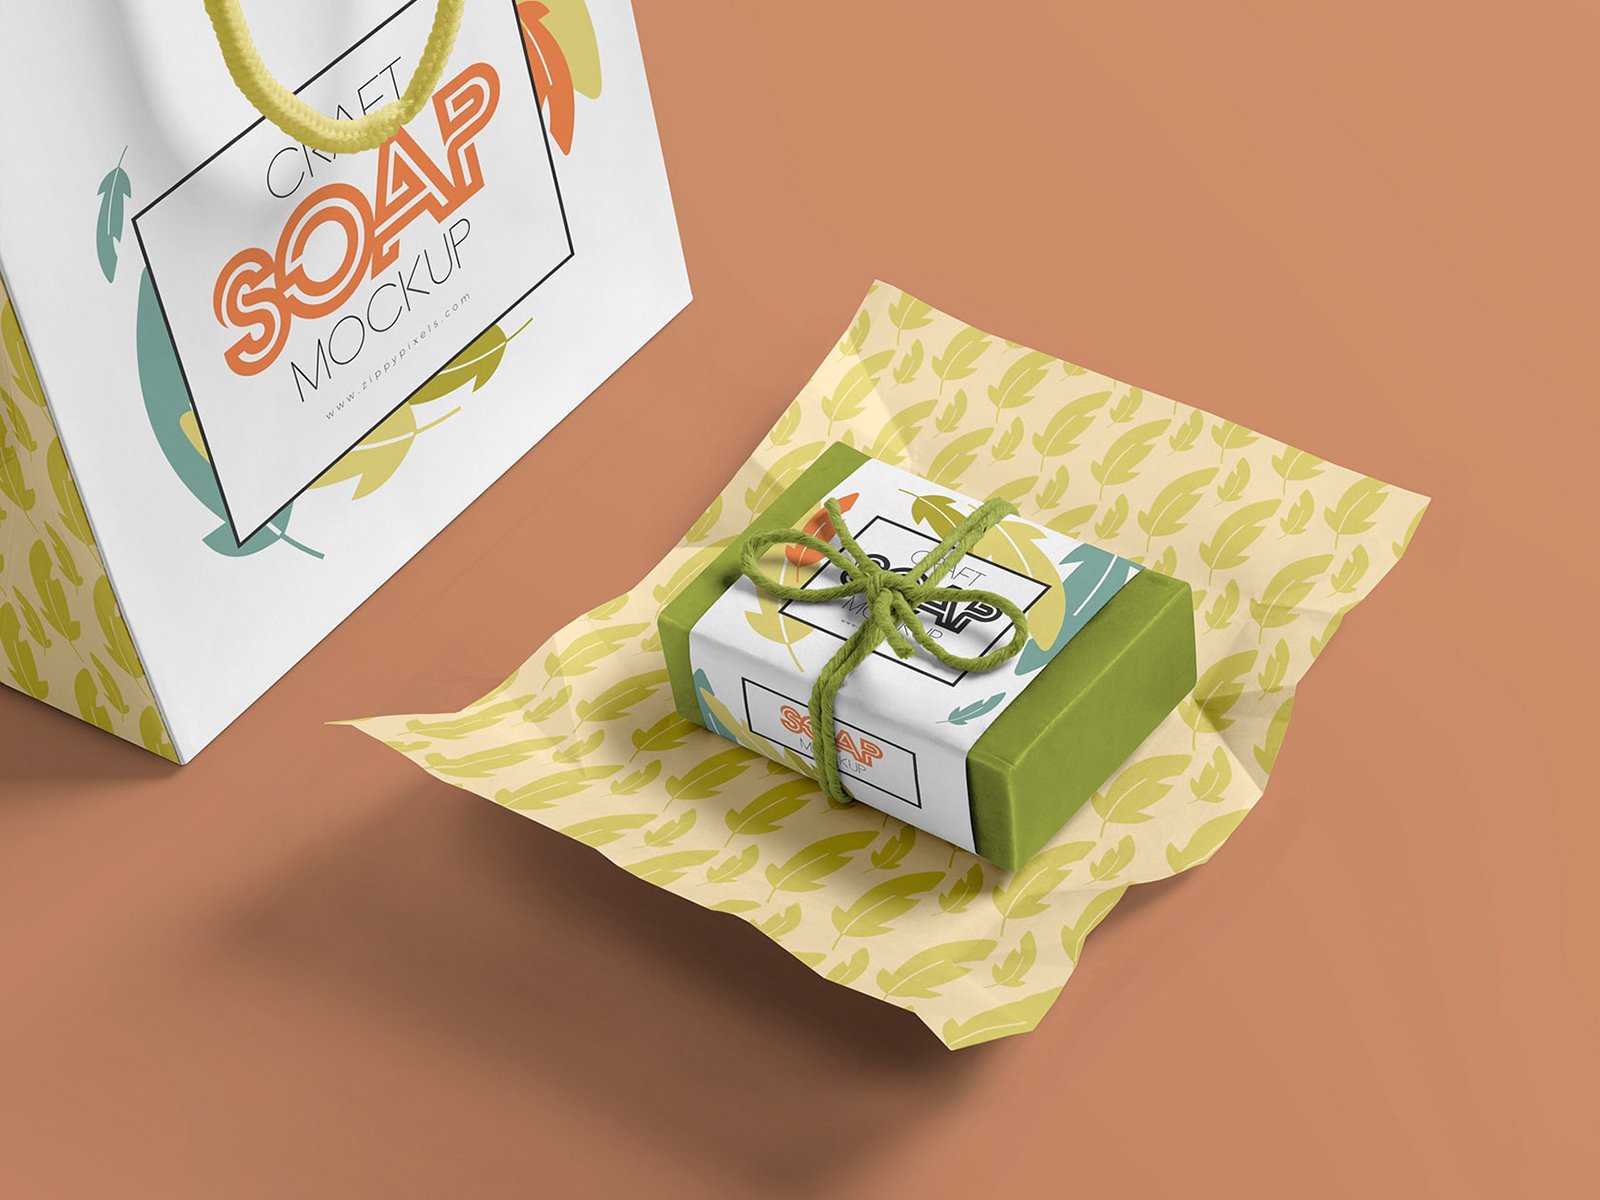 Download Craft Soap Bar Free Mockup Free Mockup